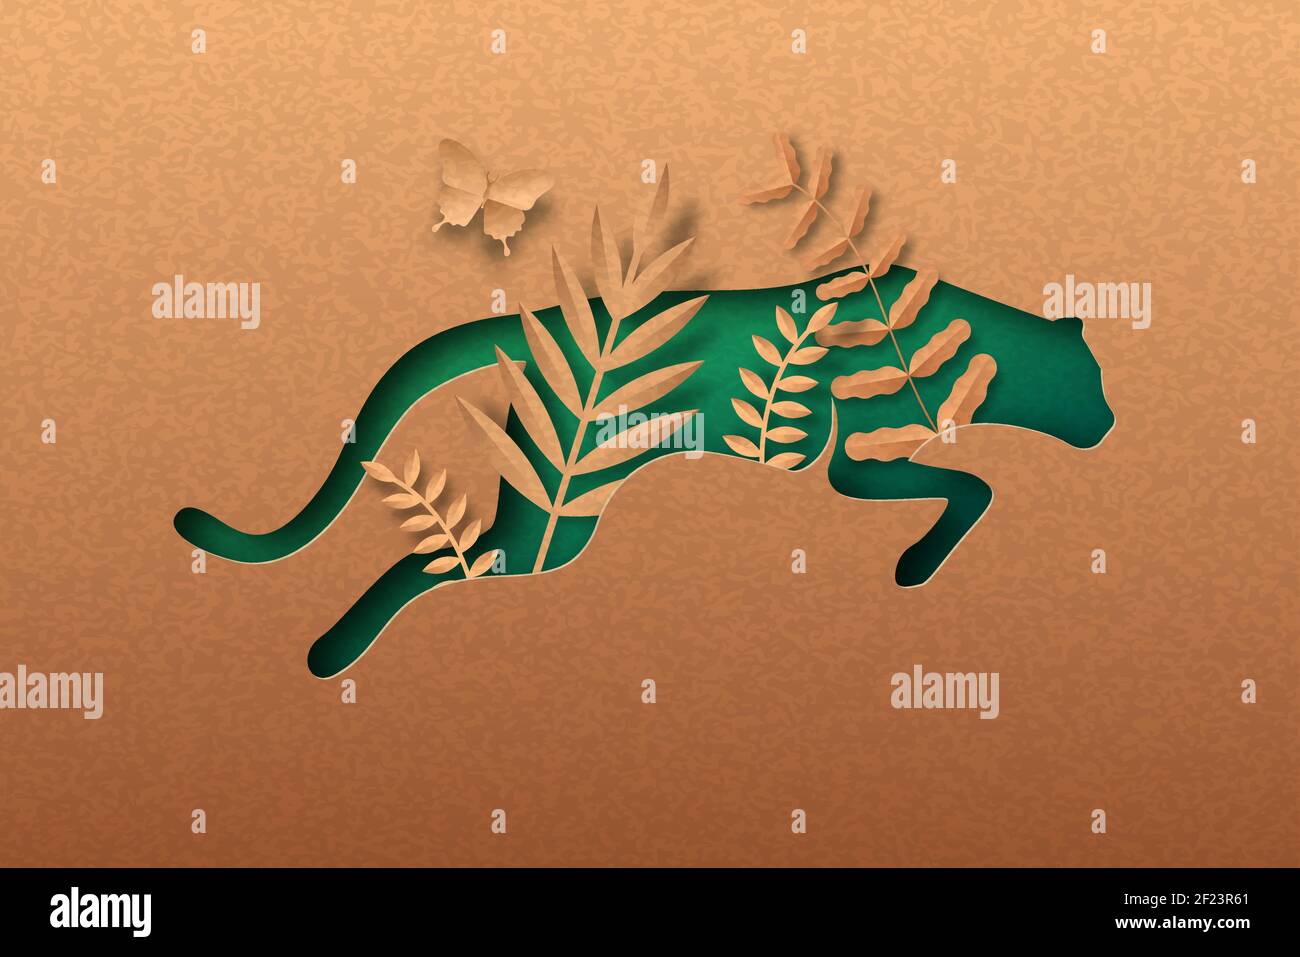 Grüner Geparden-Sprung, isolierter Tierpapierschnitt mit tropischem Pflanzenblatt im Inneren. Recycling Papier Textur Ausschnitt Konzept für afrika Safari, große Katze wild Stock Vektor